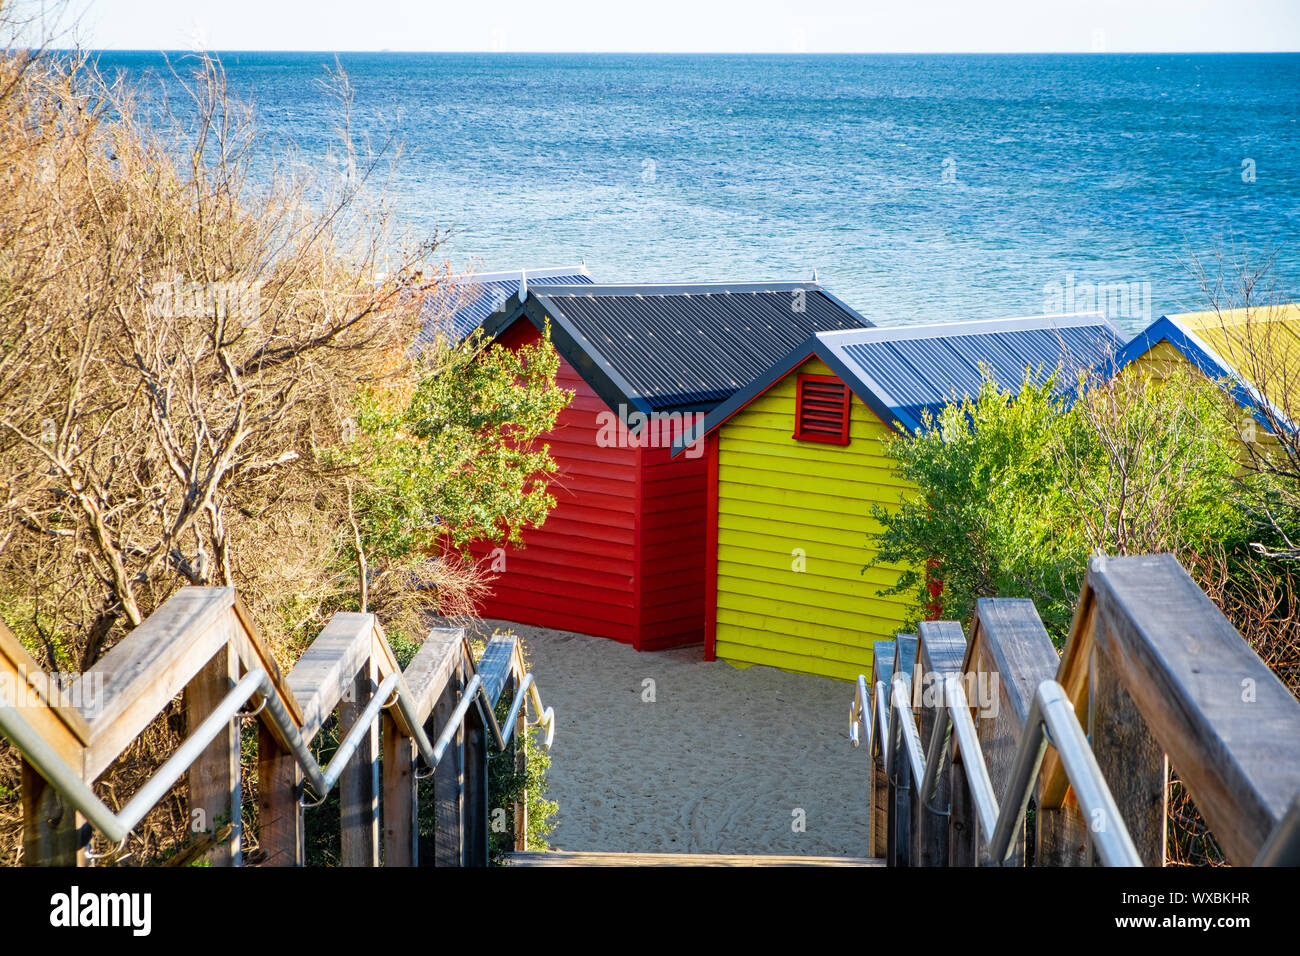 Colorful Brighton Beach huts against blue sea in bright daylight. Melbourne, Victoria, Australia Stock Photo